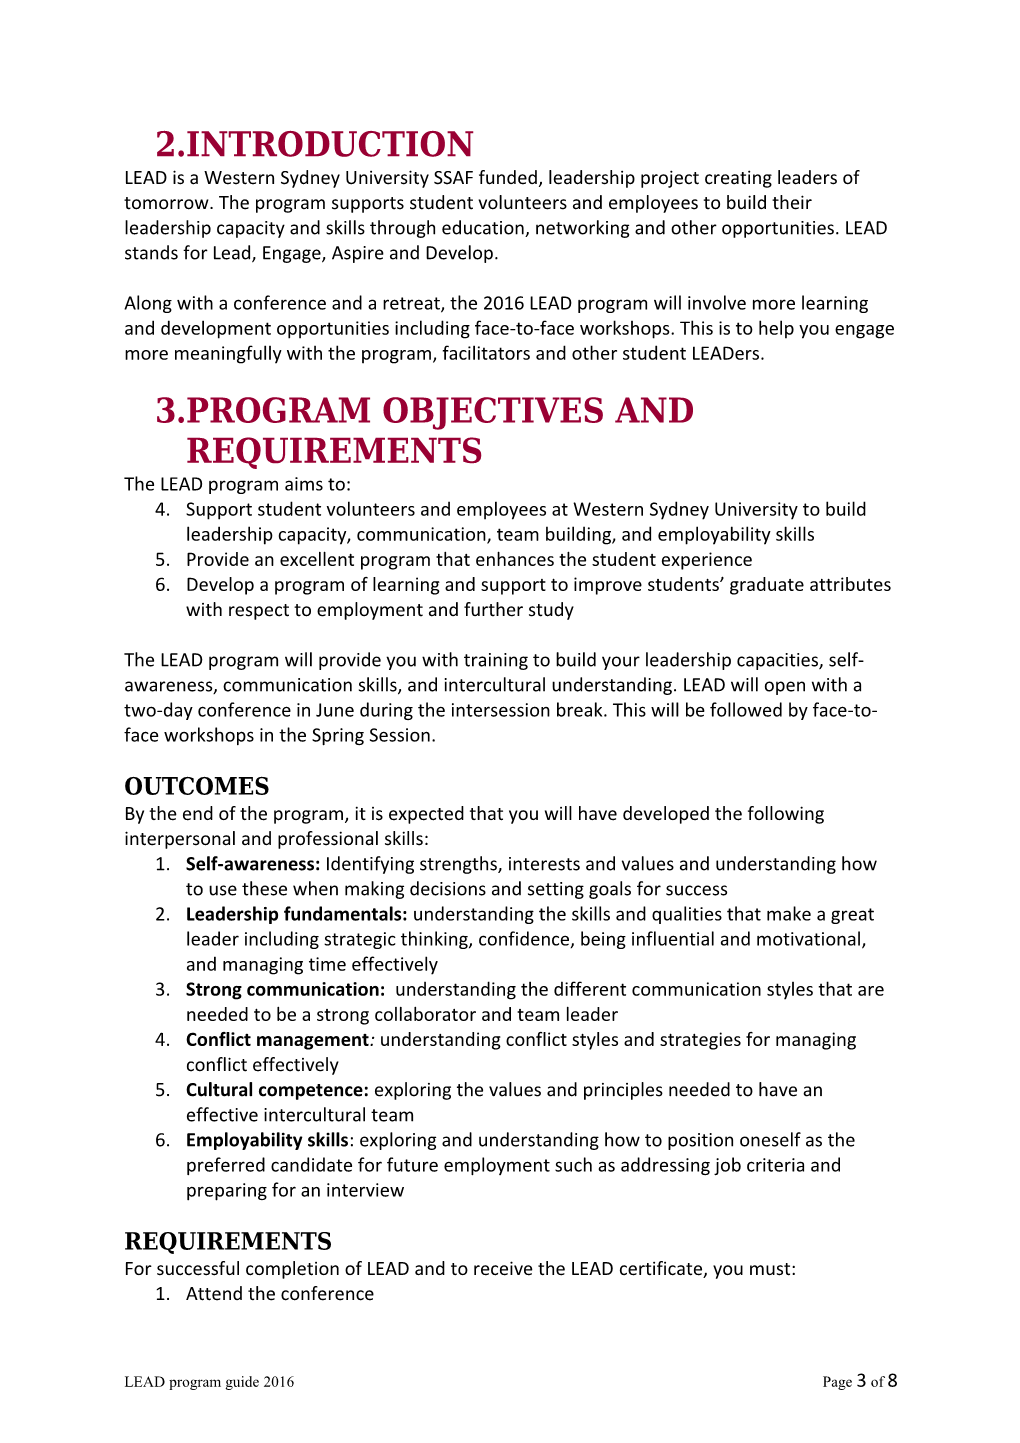 Lead Program Guide